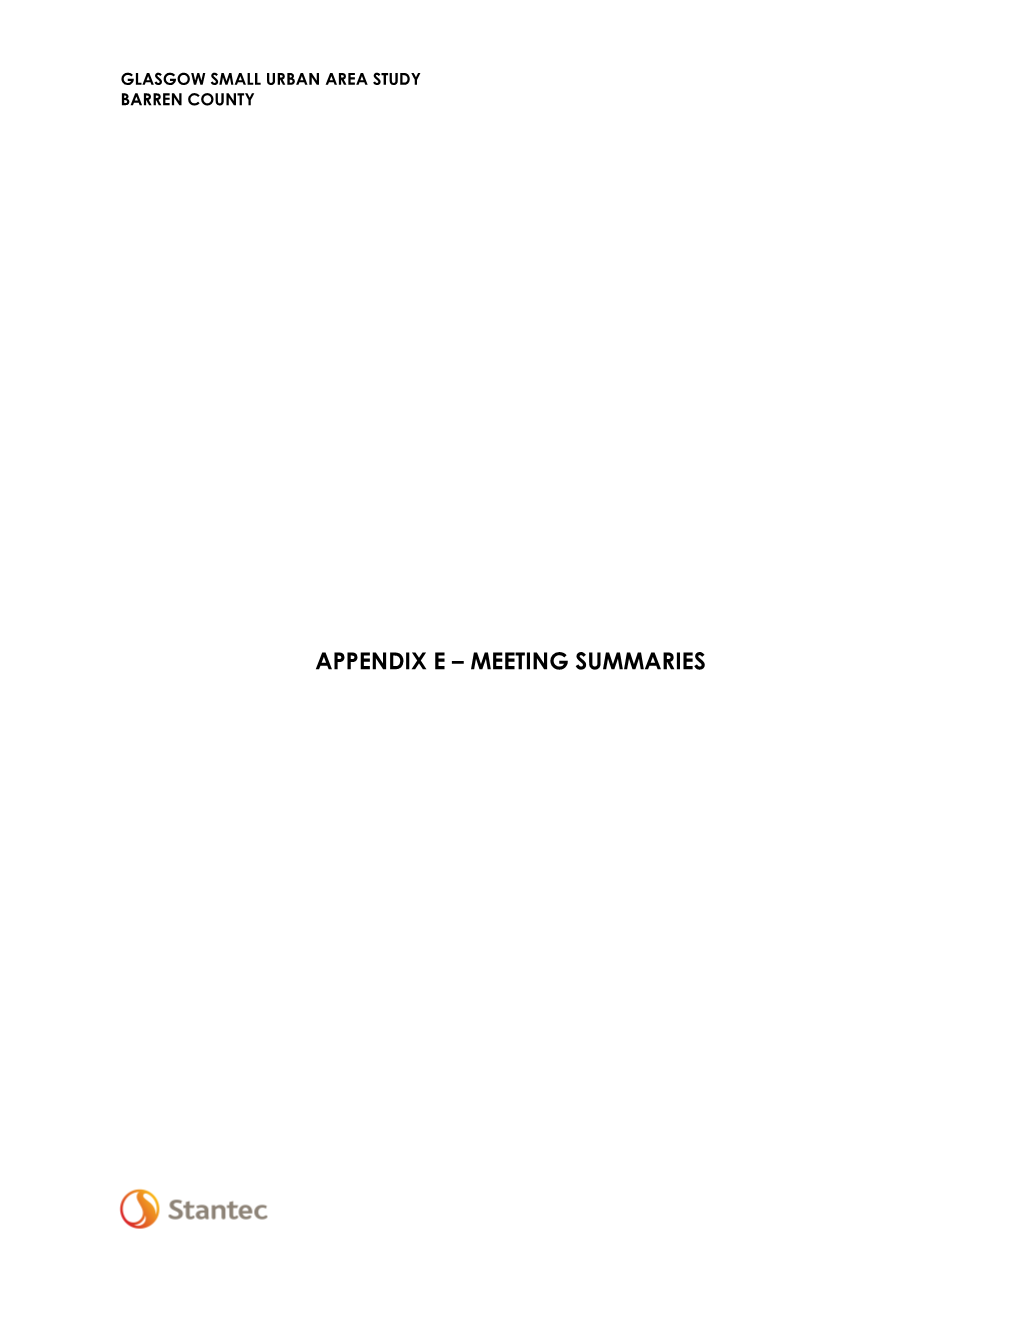 Appendix E – Meeting Summaries